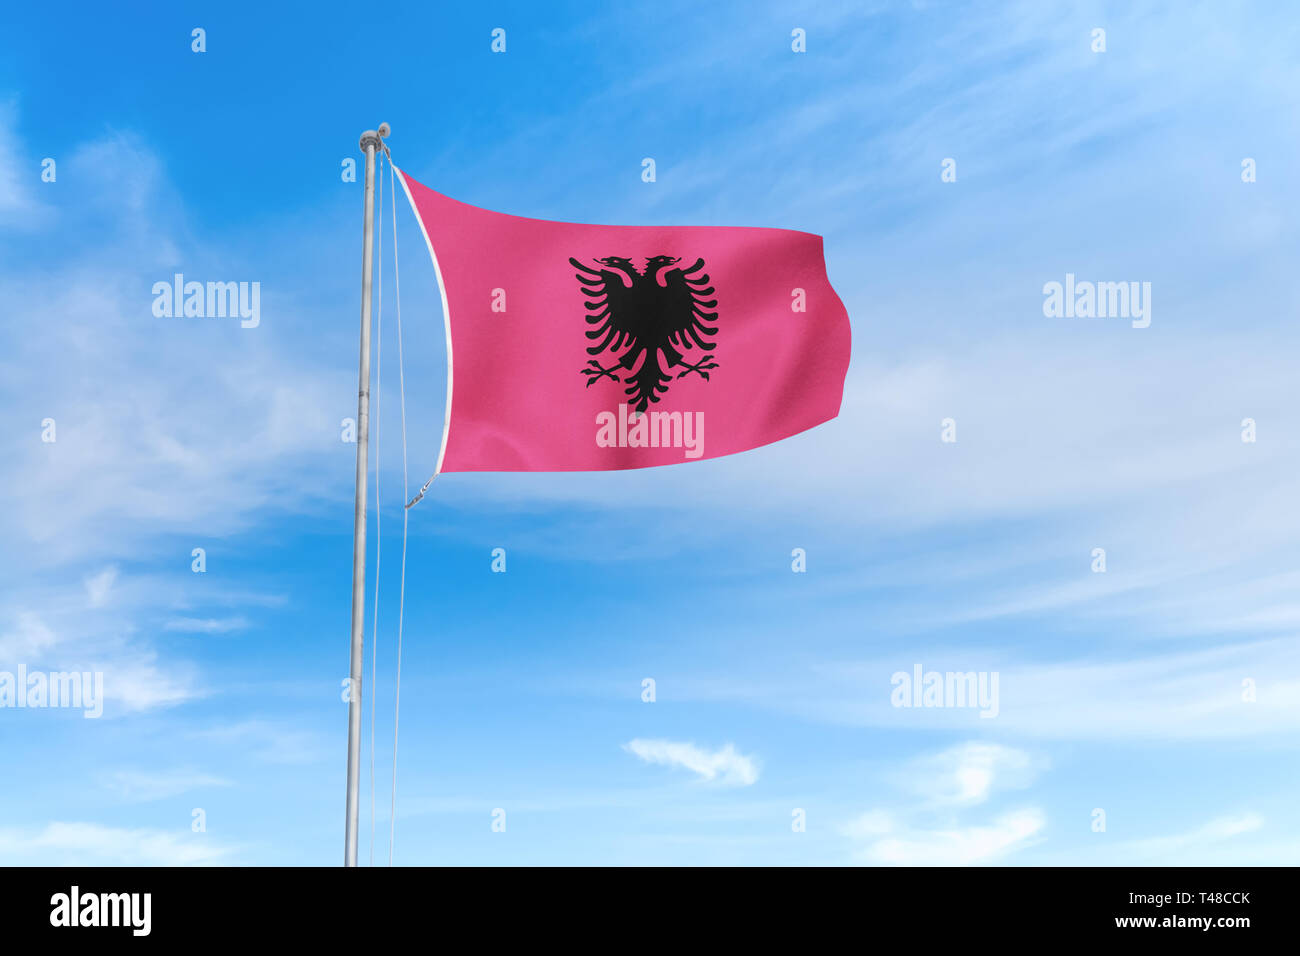 Albanien Flagge weht im Wind über blauen Himmel Hintergrund Stockfoto